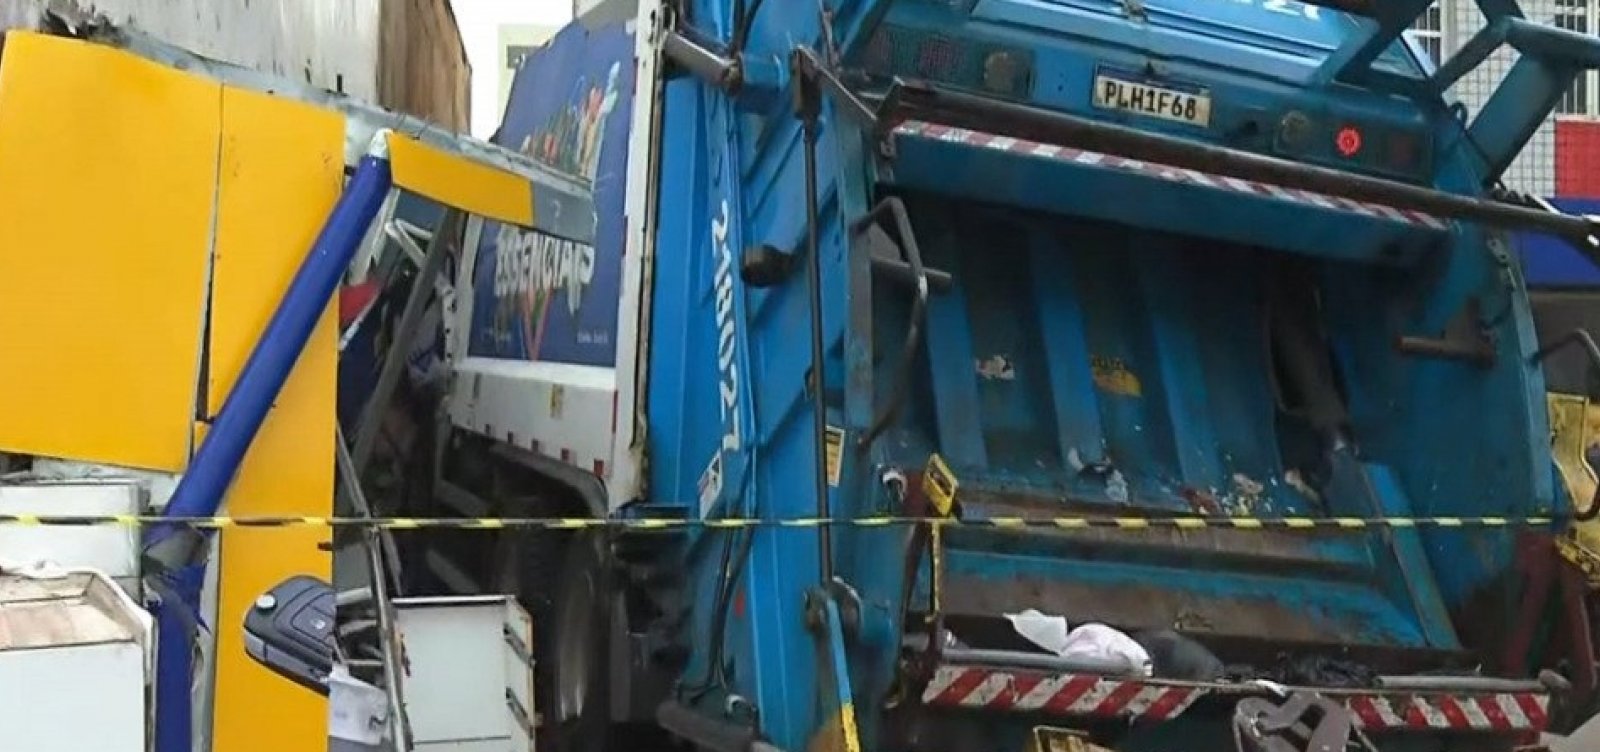 Caminhão de lixo se choca contra prédio e deixa quatro feridos